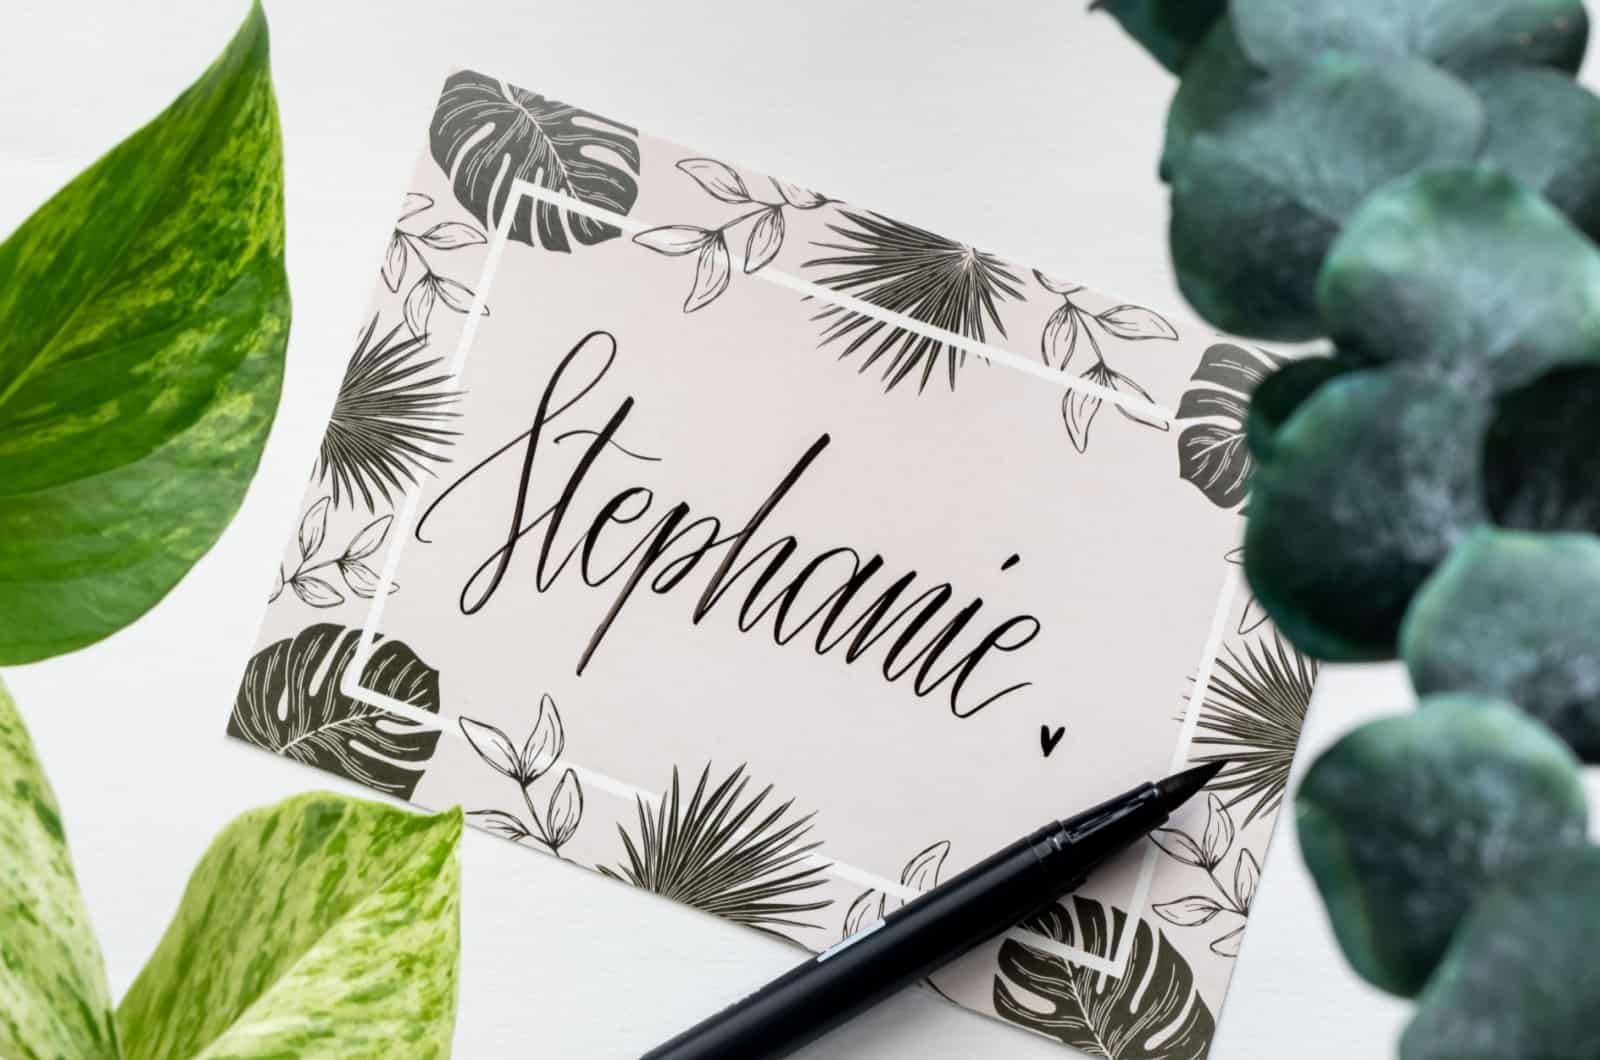 name Stephanie on card